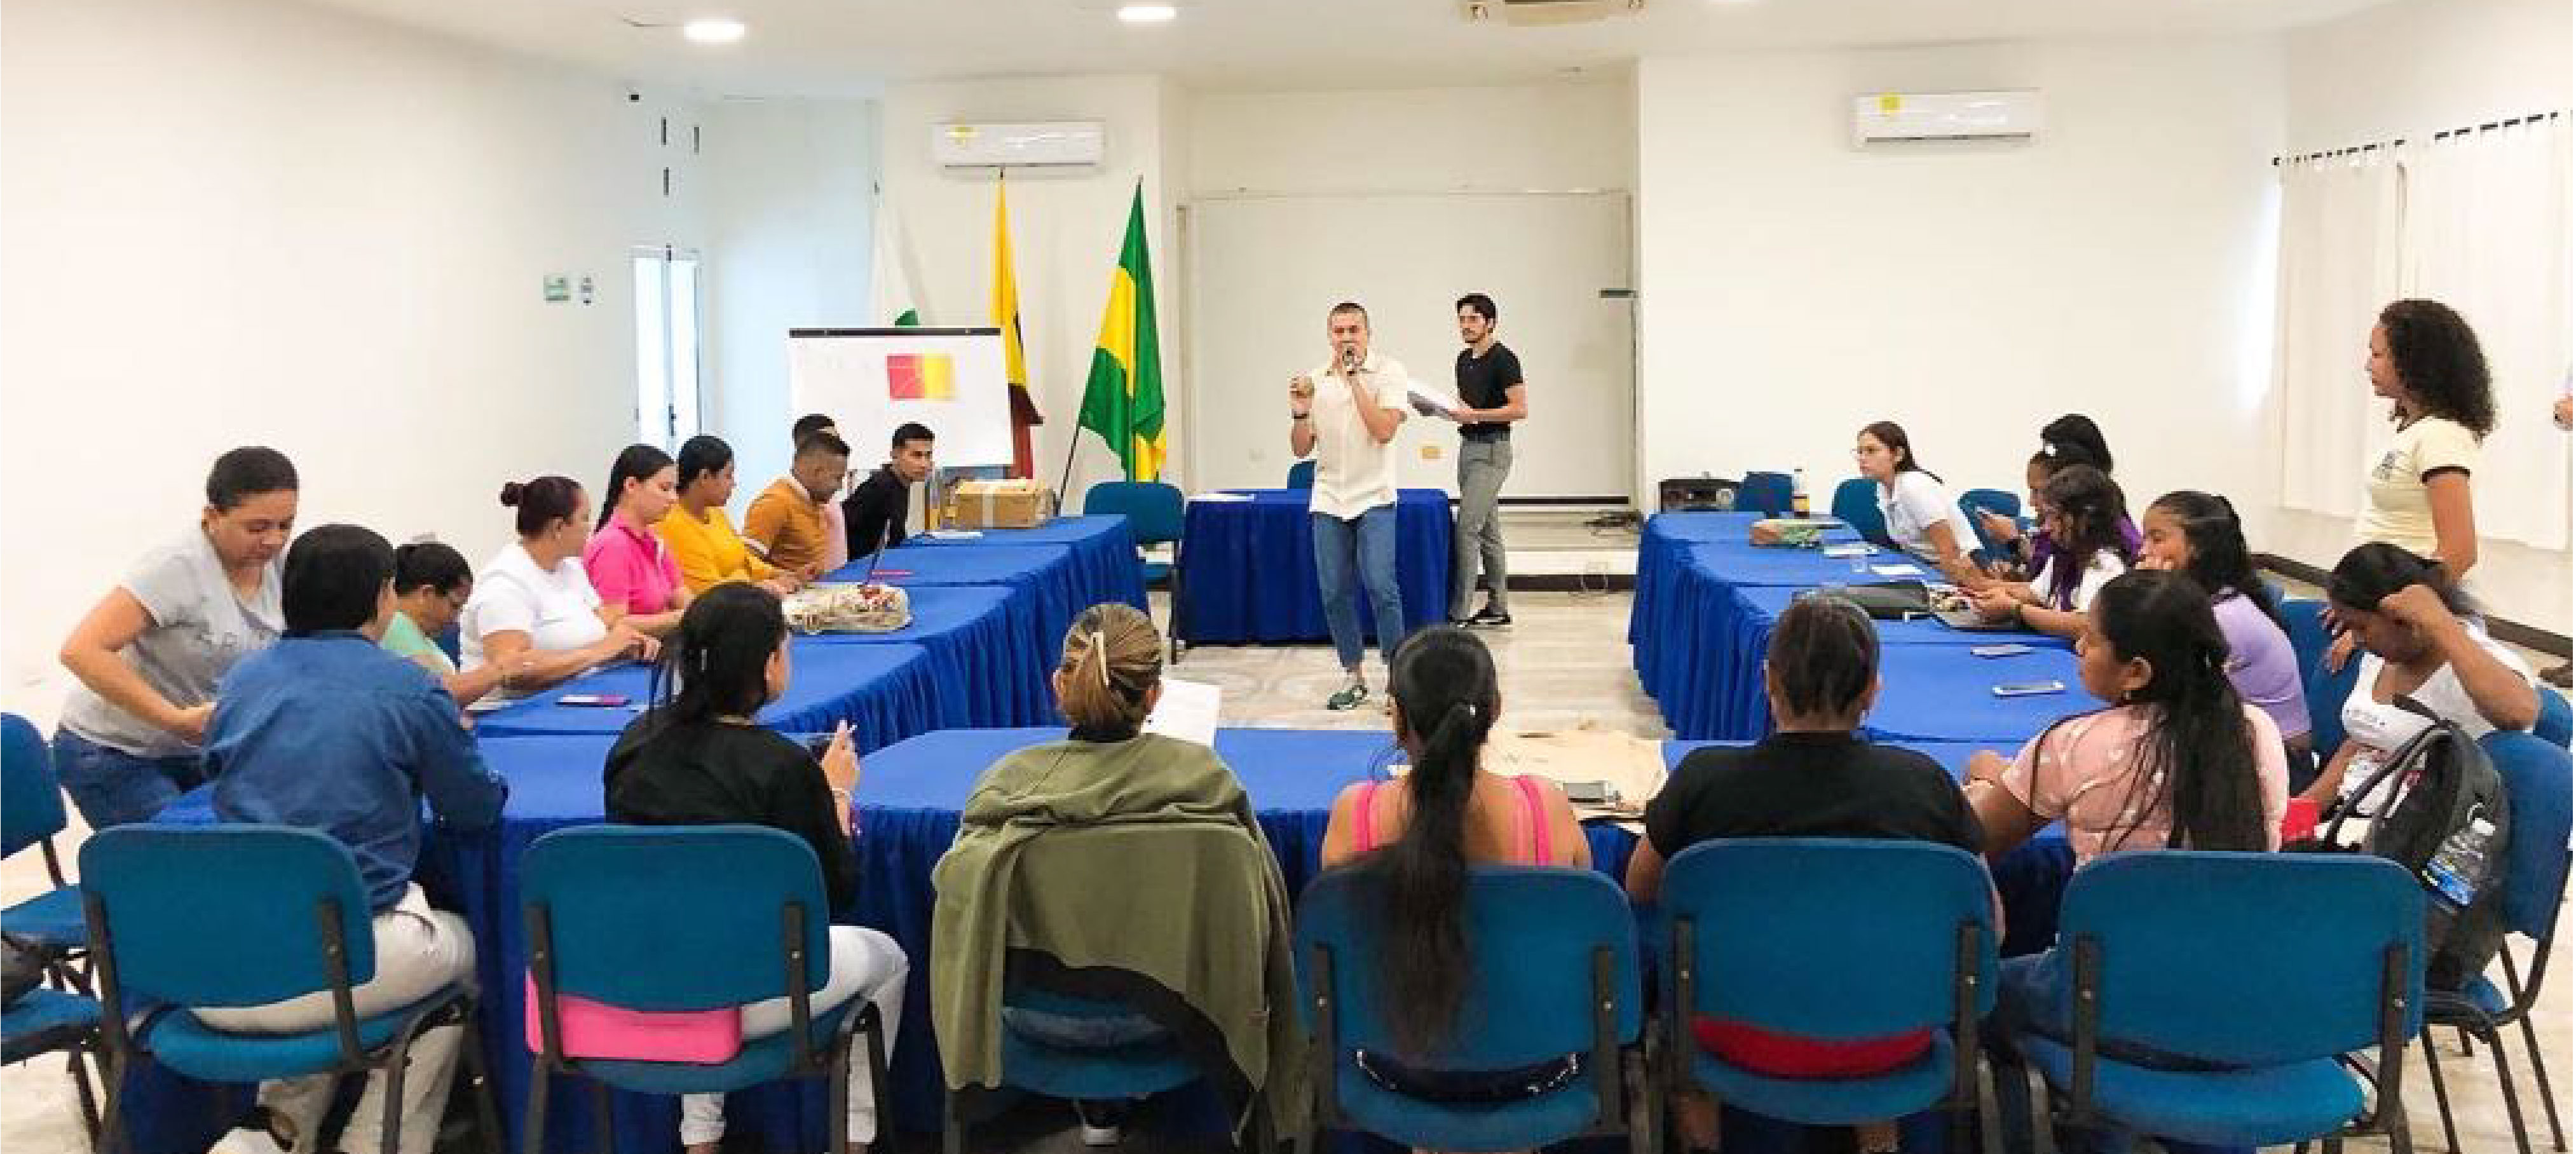 Participantes al espacio del Col-Col, en salón, atendiendo la intervención de APC-Colombia